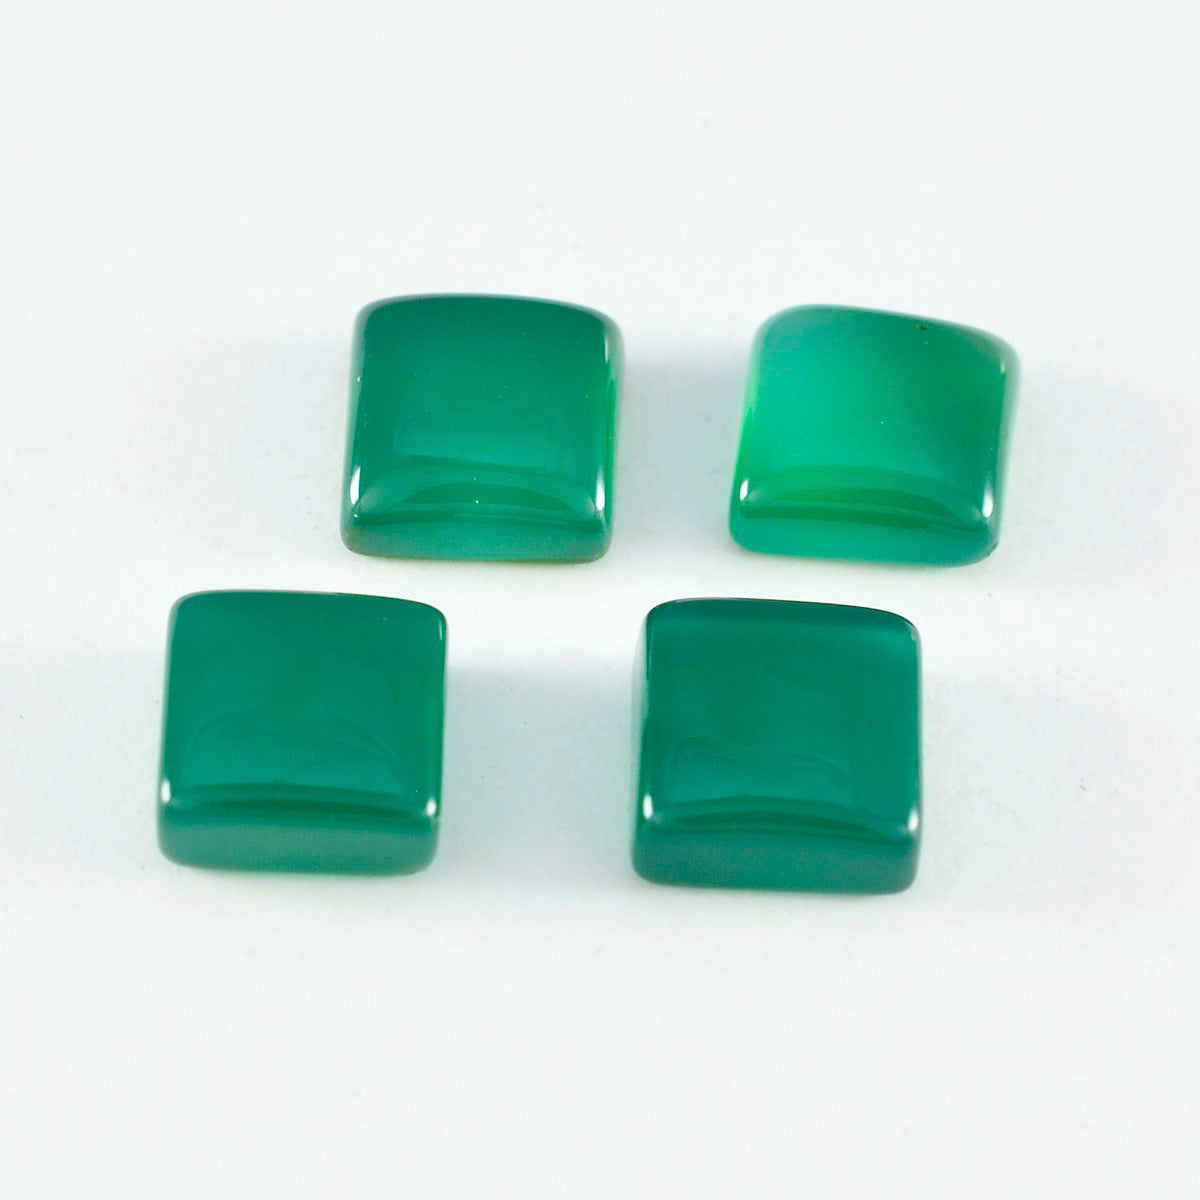 Riyogems 1 Stück grüner Onyx-Cabochon, 15 x 15 mm, quadratische Form, hübscher, hochwertiger loser Stein